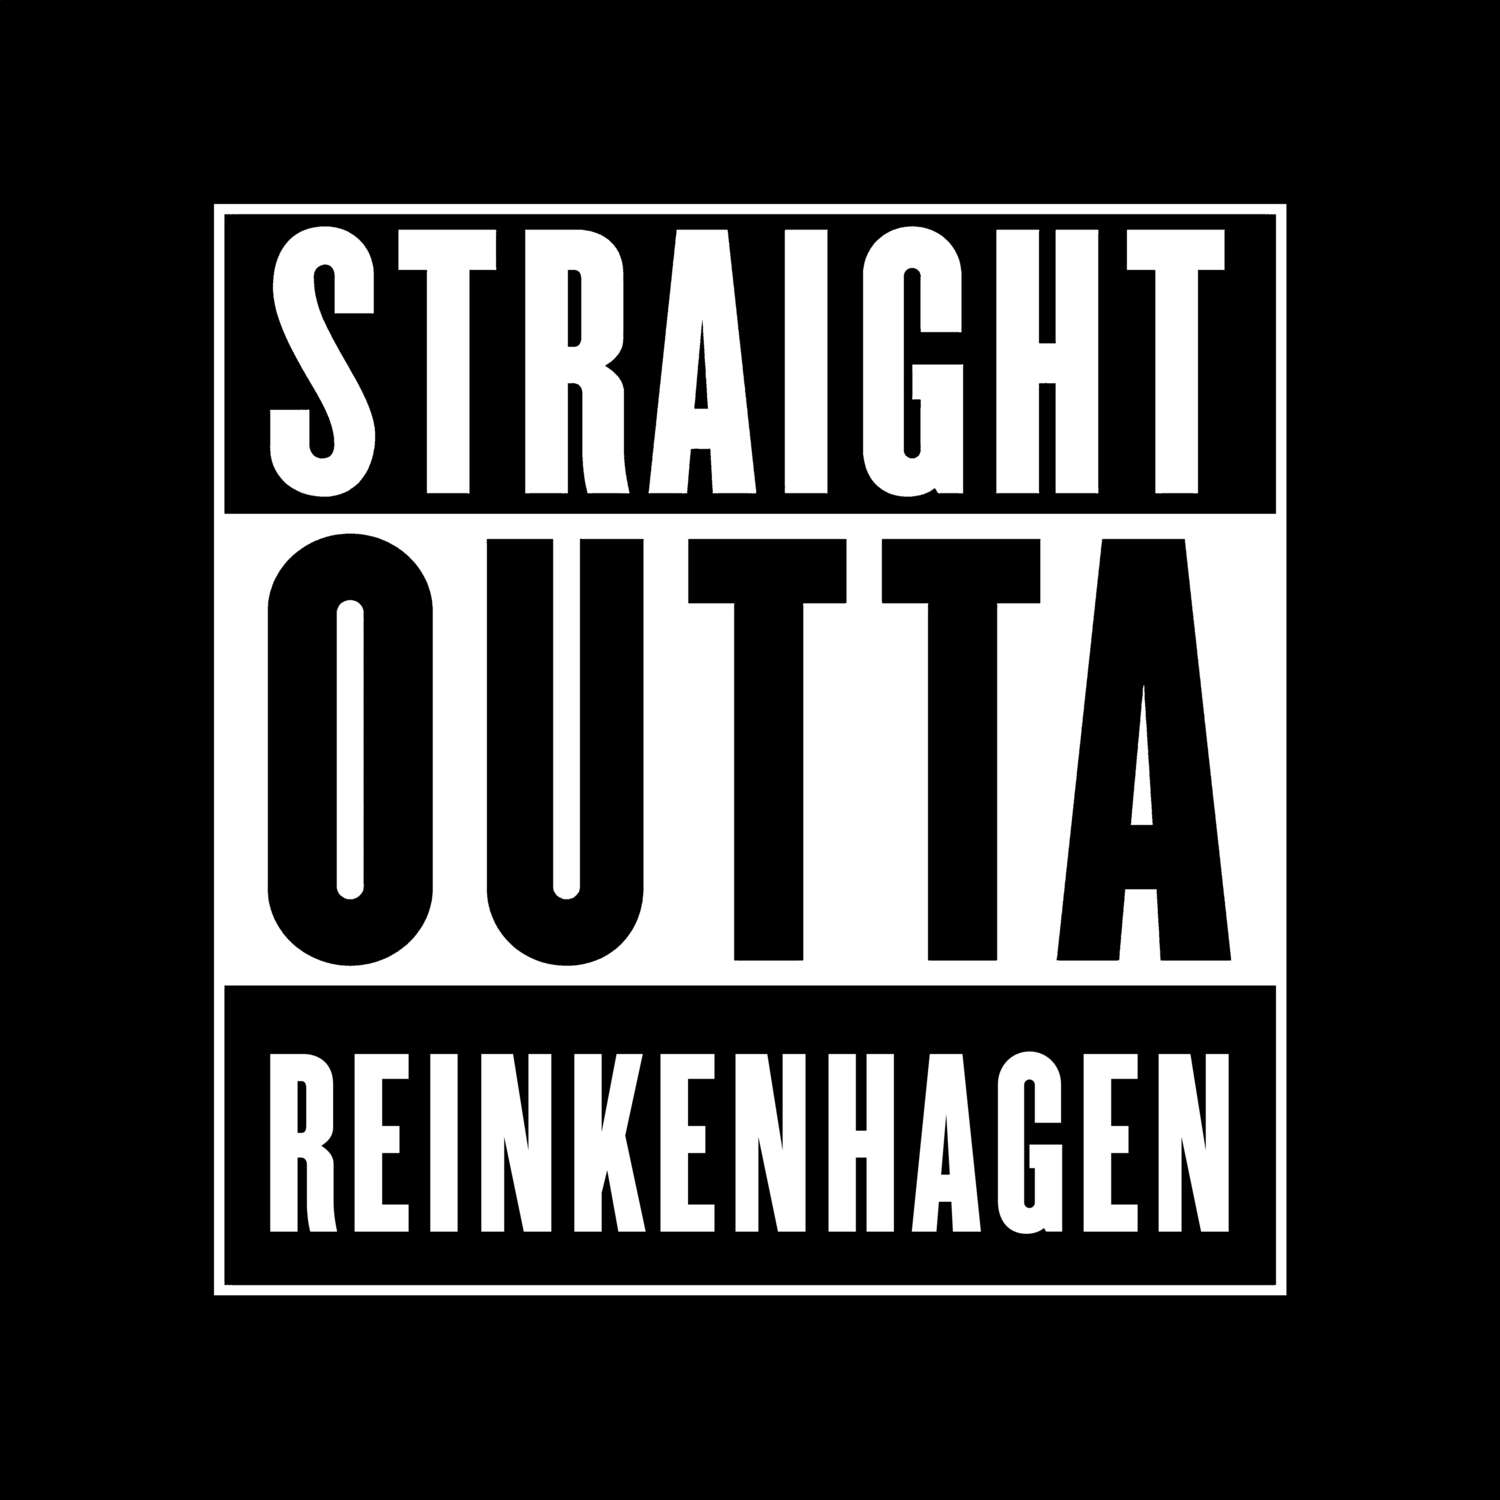 Reinkenhagen T-Shirt »Straight Outta«